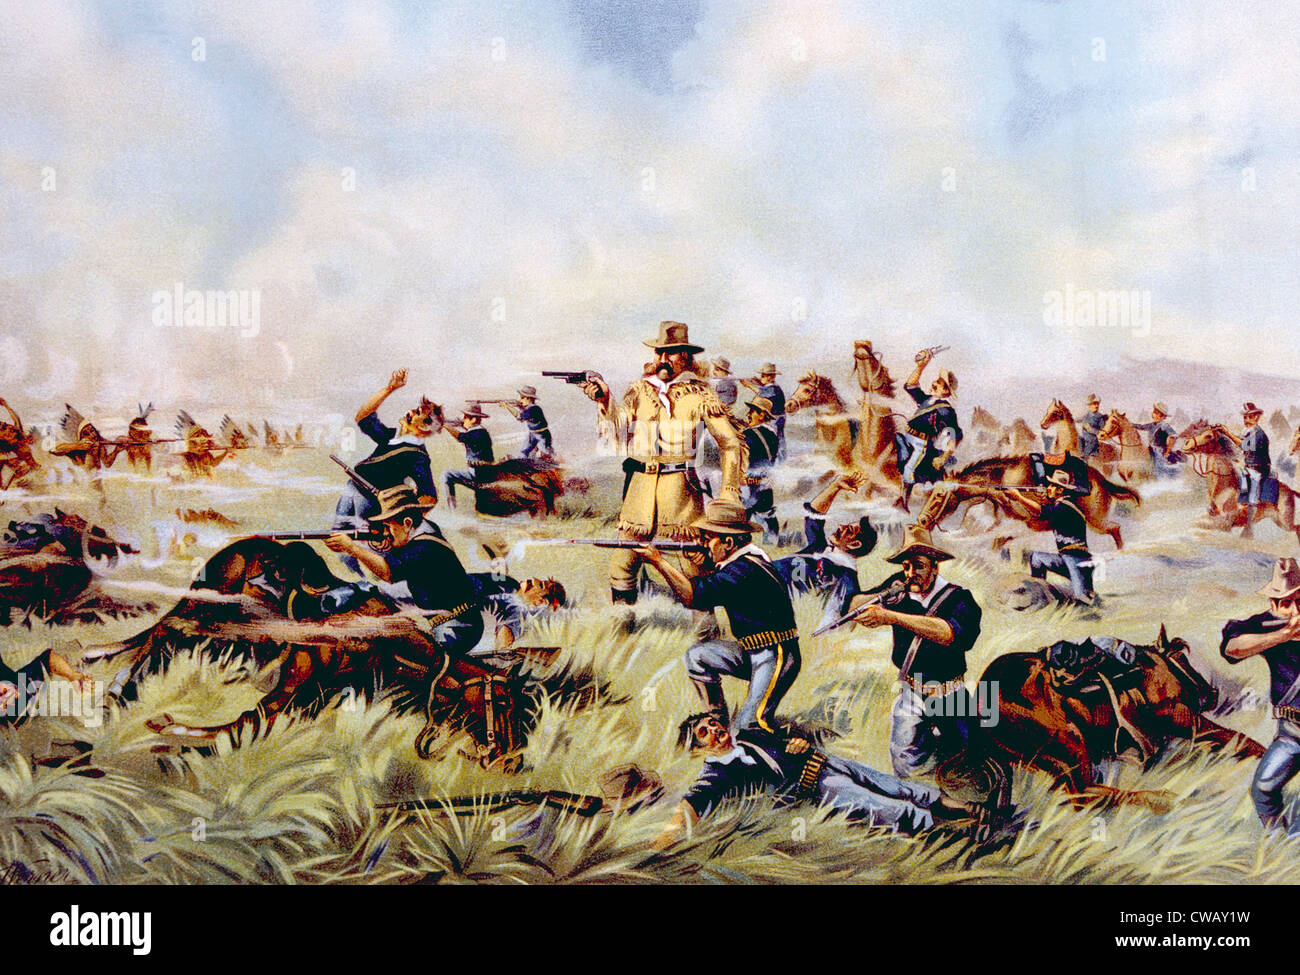 Custer's Last Stand, el General George Armstrong Custer en la batalla de Little Bighorn, 1876 Litografía publicado 1899 Foto de stock